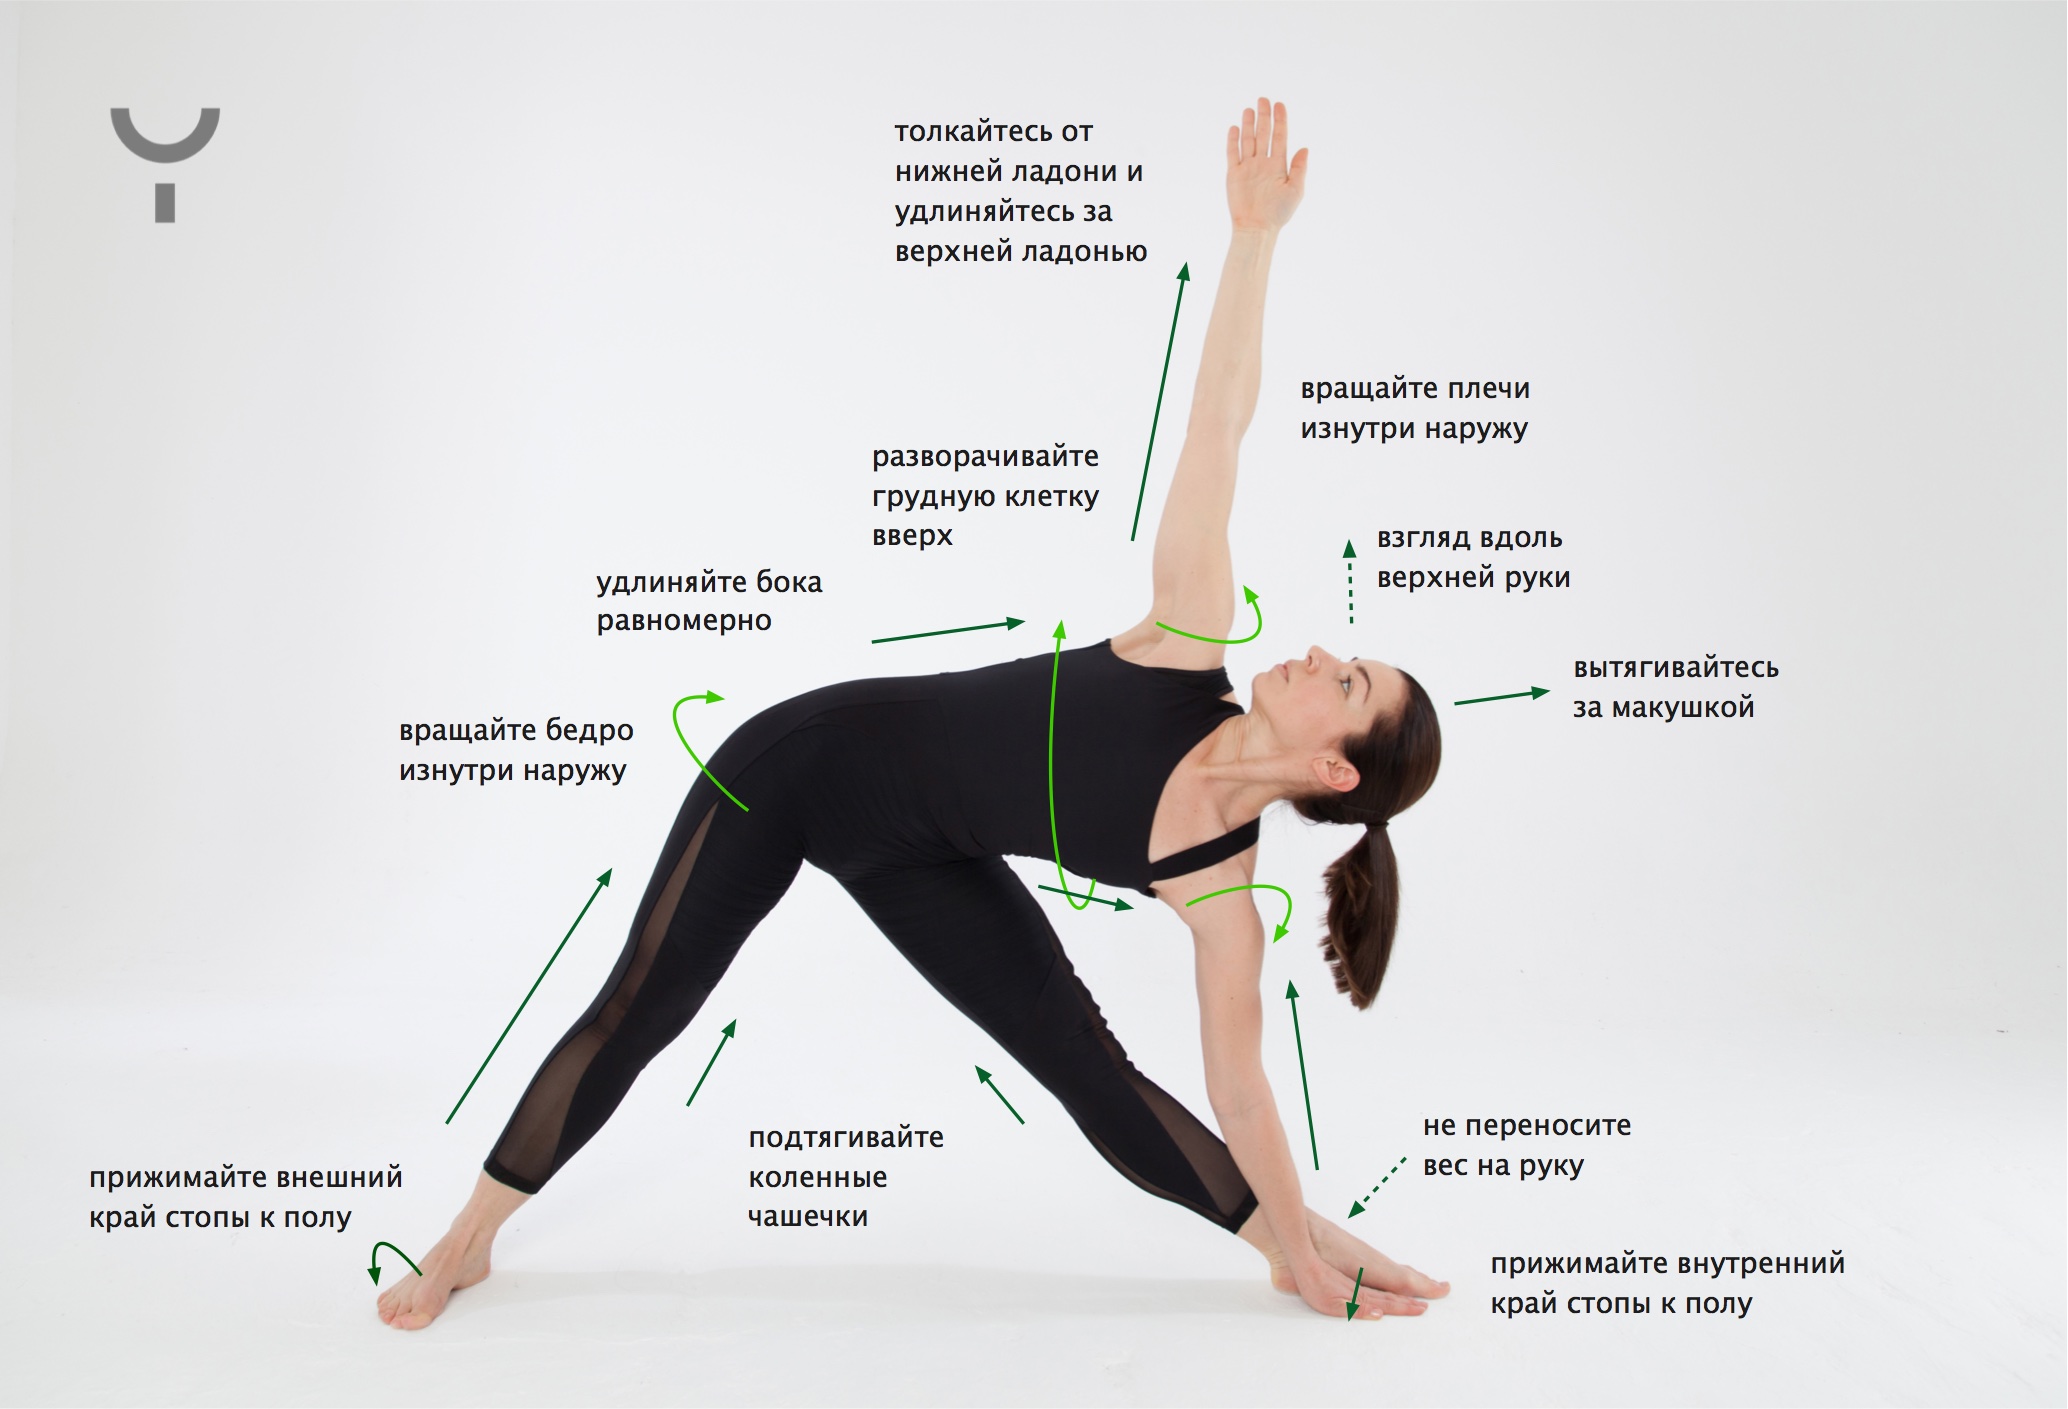 Биомеханика йоги | фитнес | онлайн-журнал #яworldclass